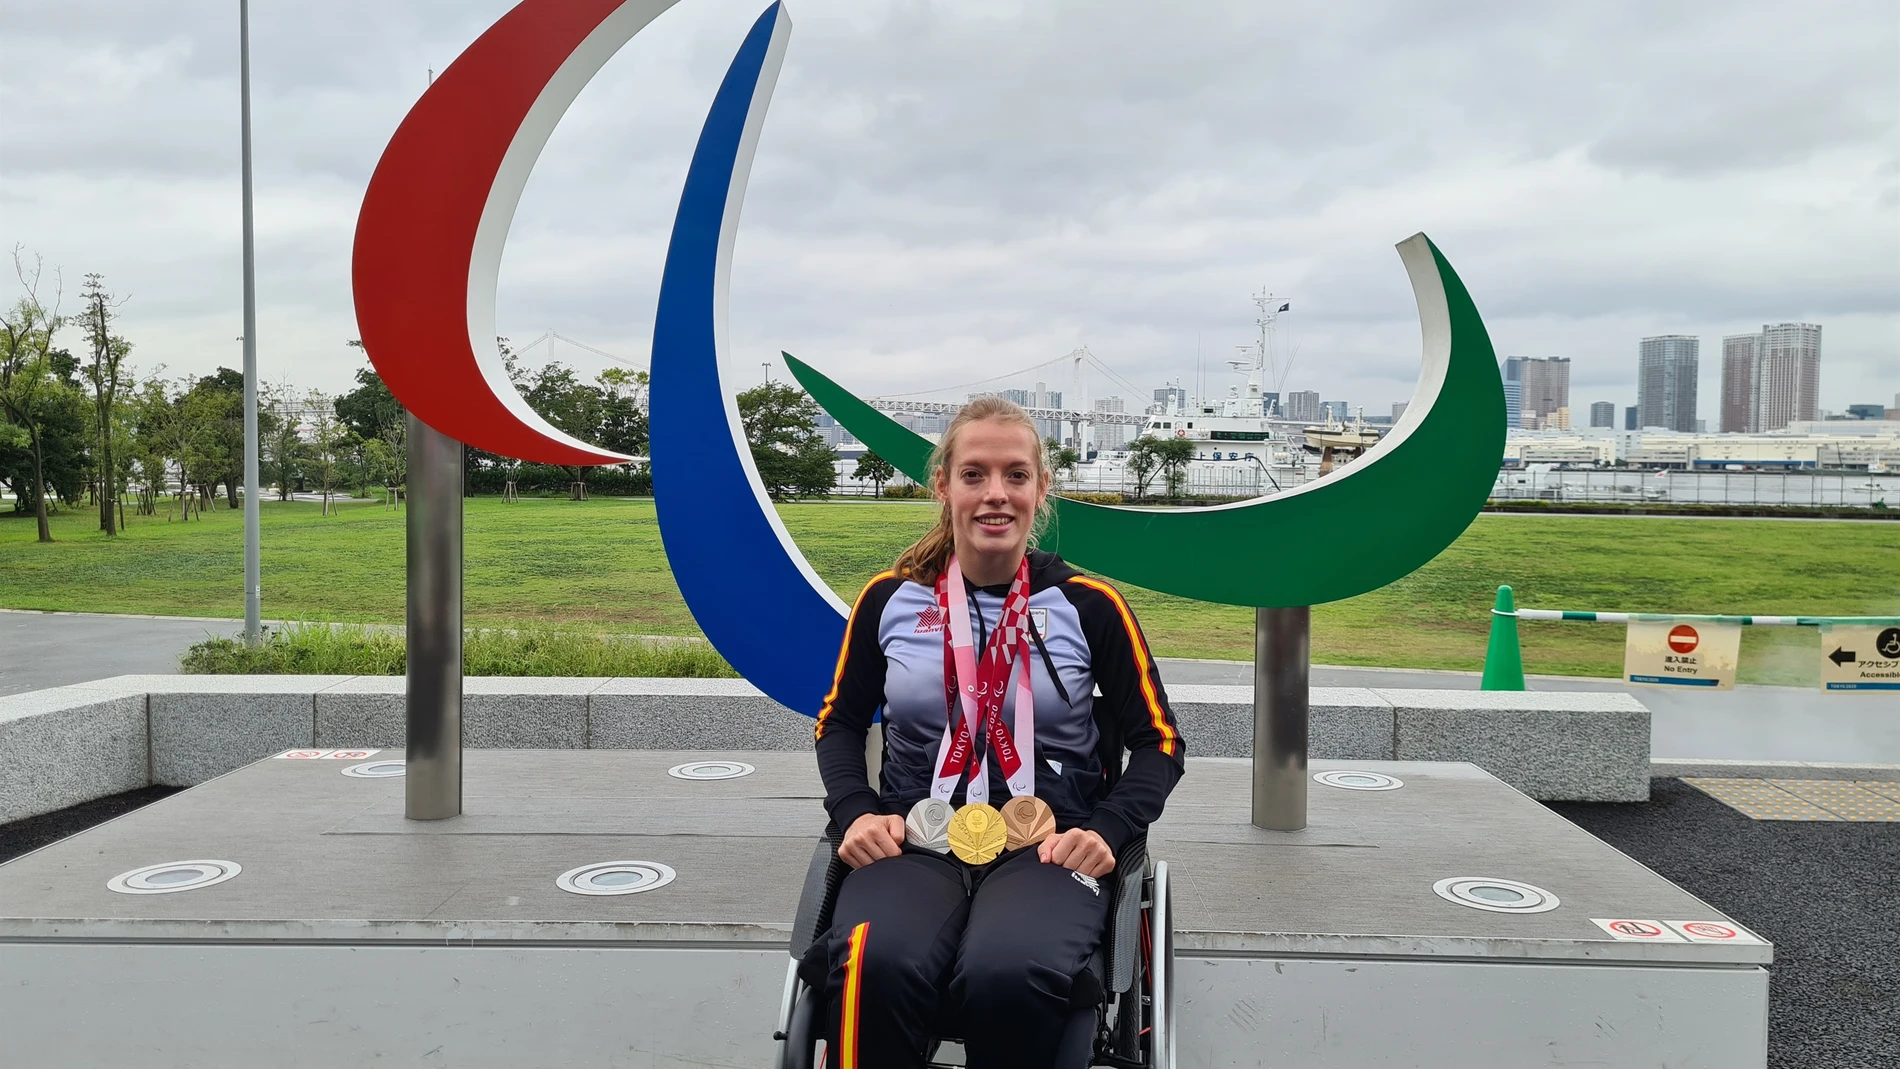 La nadadora burgalesa Marta Fernández posa con sus tres medallas en la Villa Paralímpica de Tokio